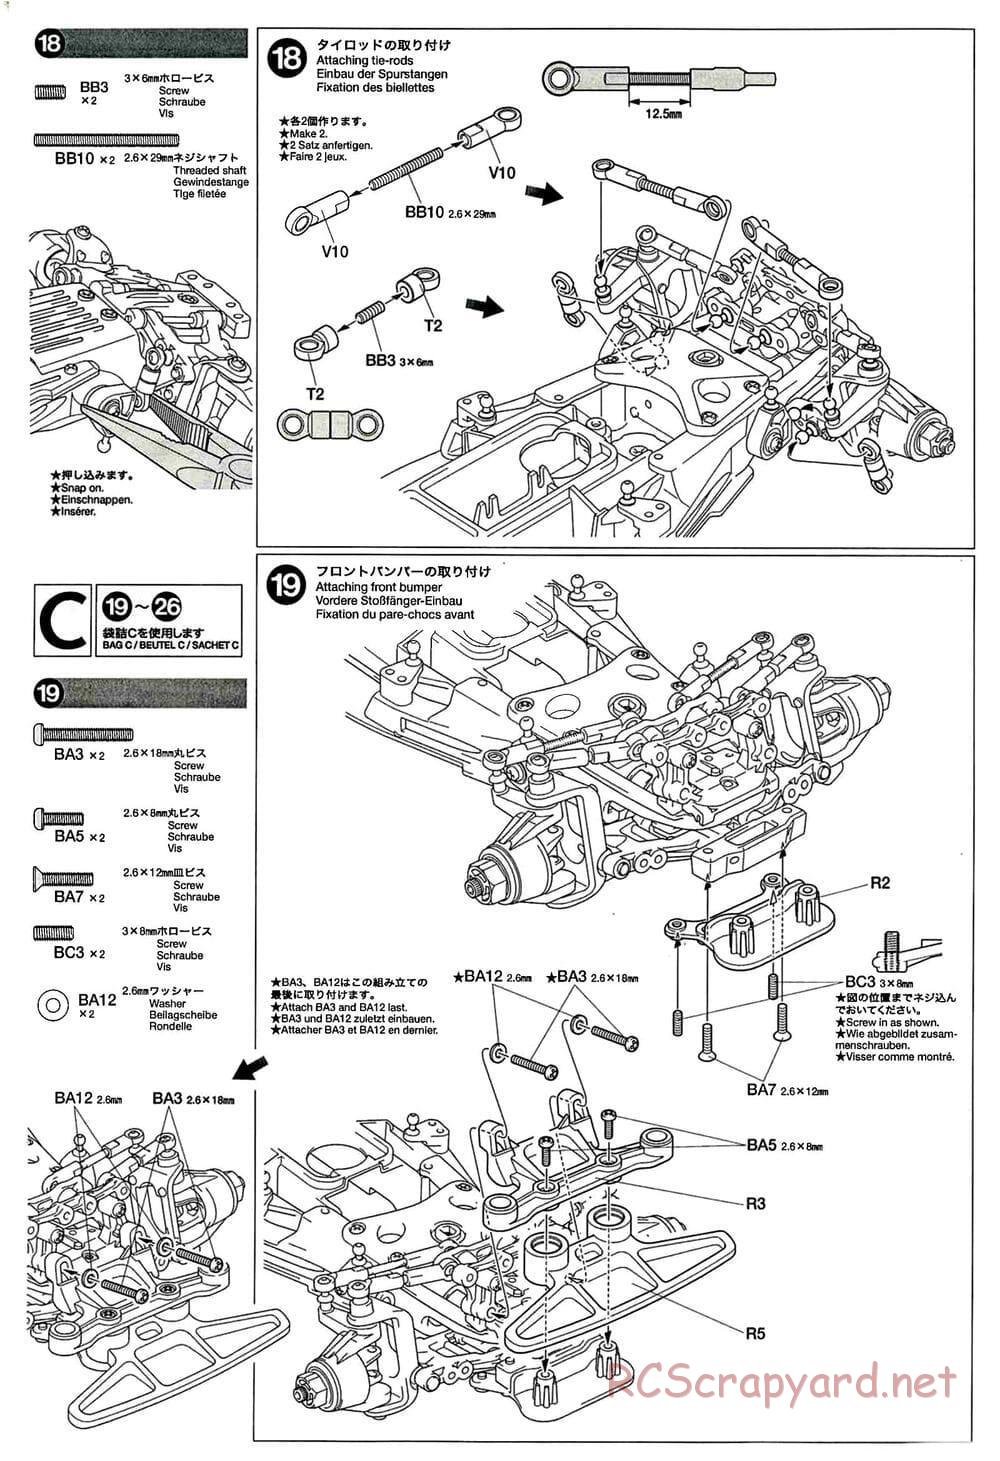 Tamiya - GT-01 Chassis - Manual - Page 12